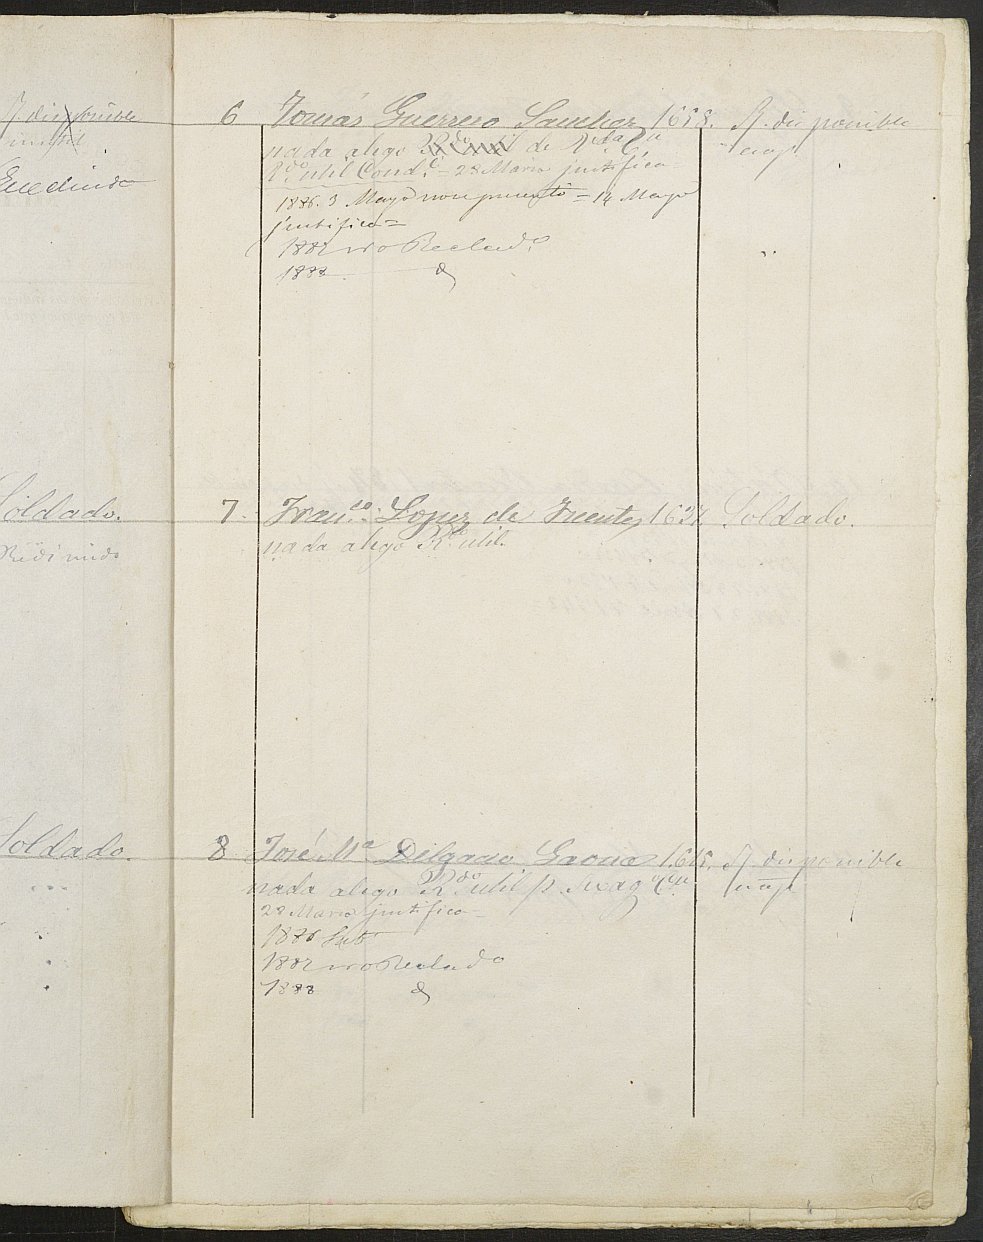 Relación de individuos declarados soldados e ingresados en Caja de la Sección 3ª del Ayuntamiento de Cartagena de 1885.